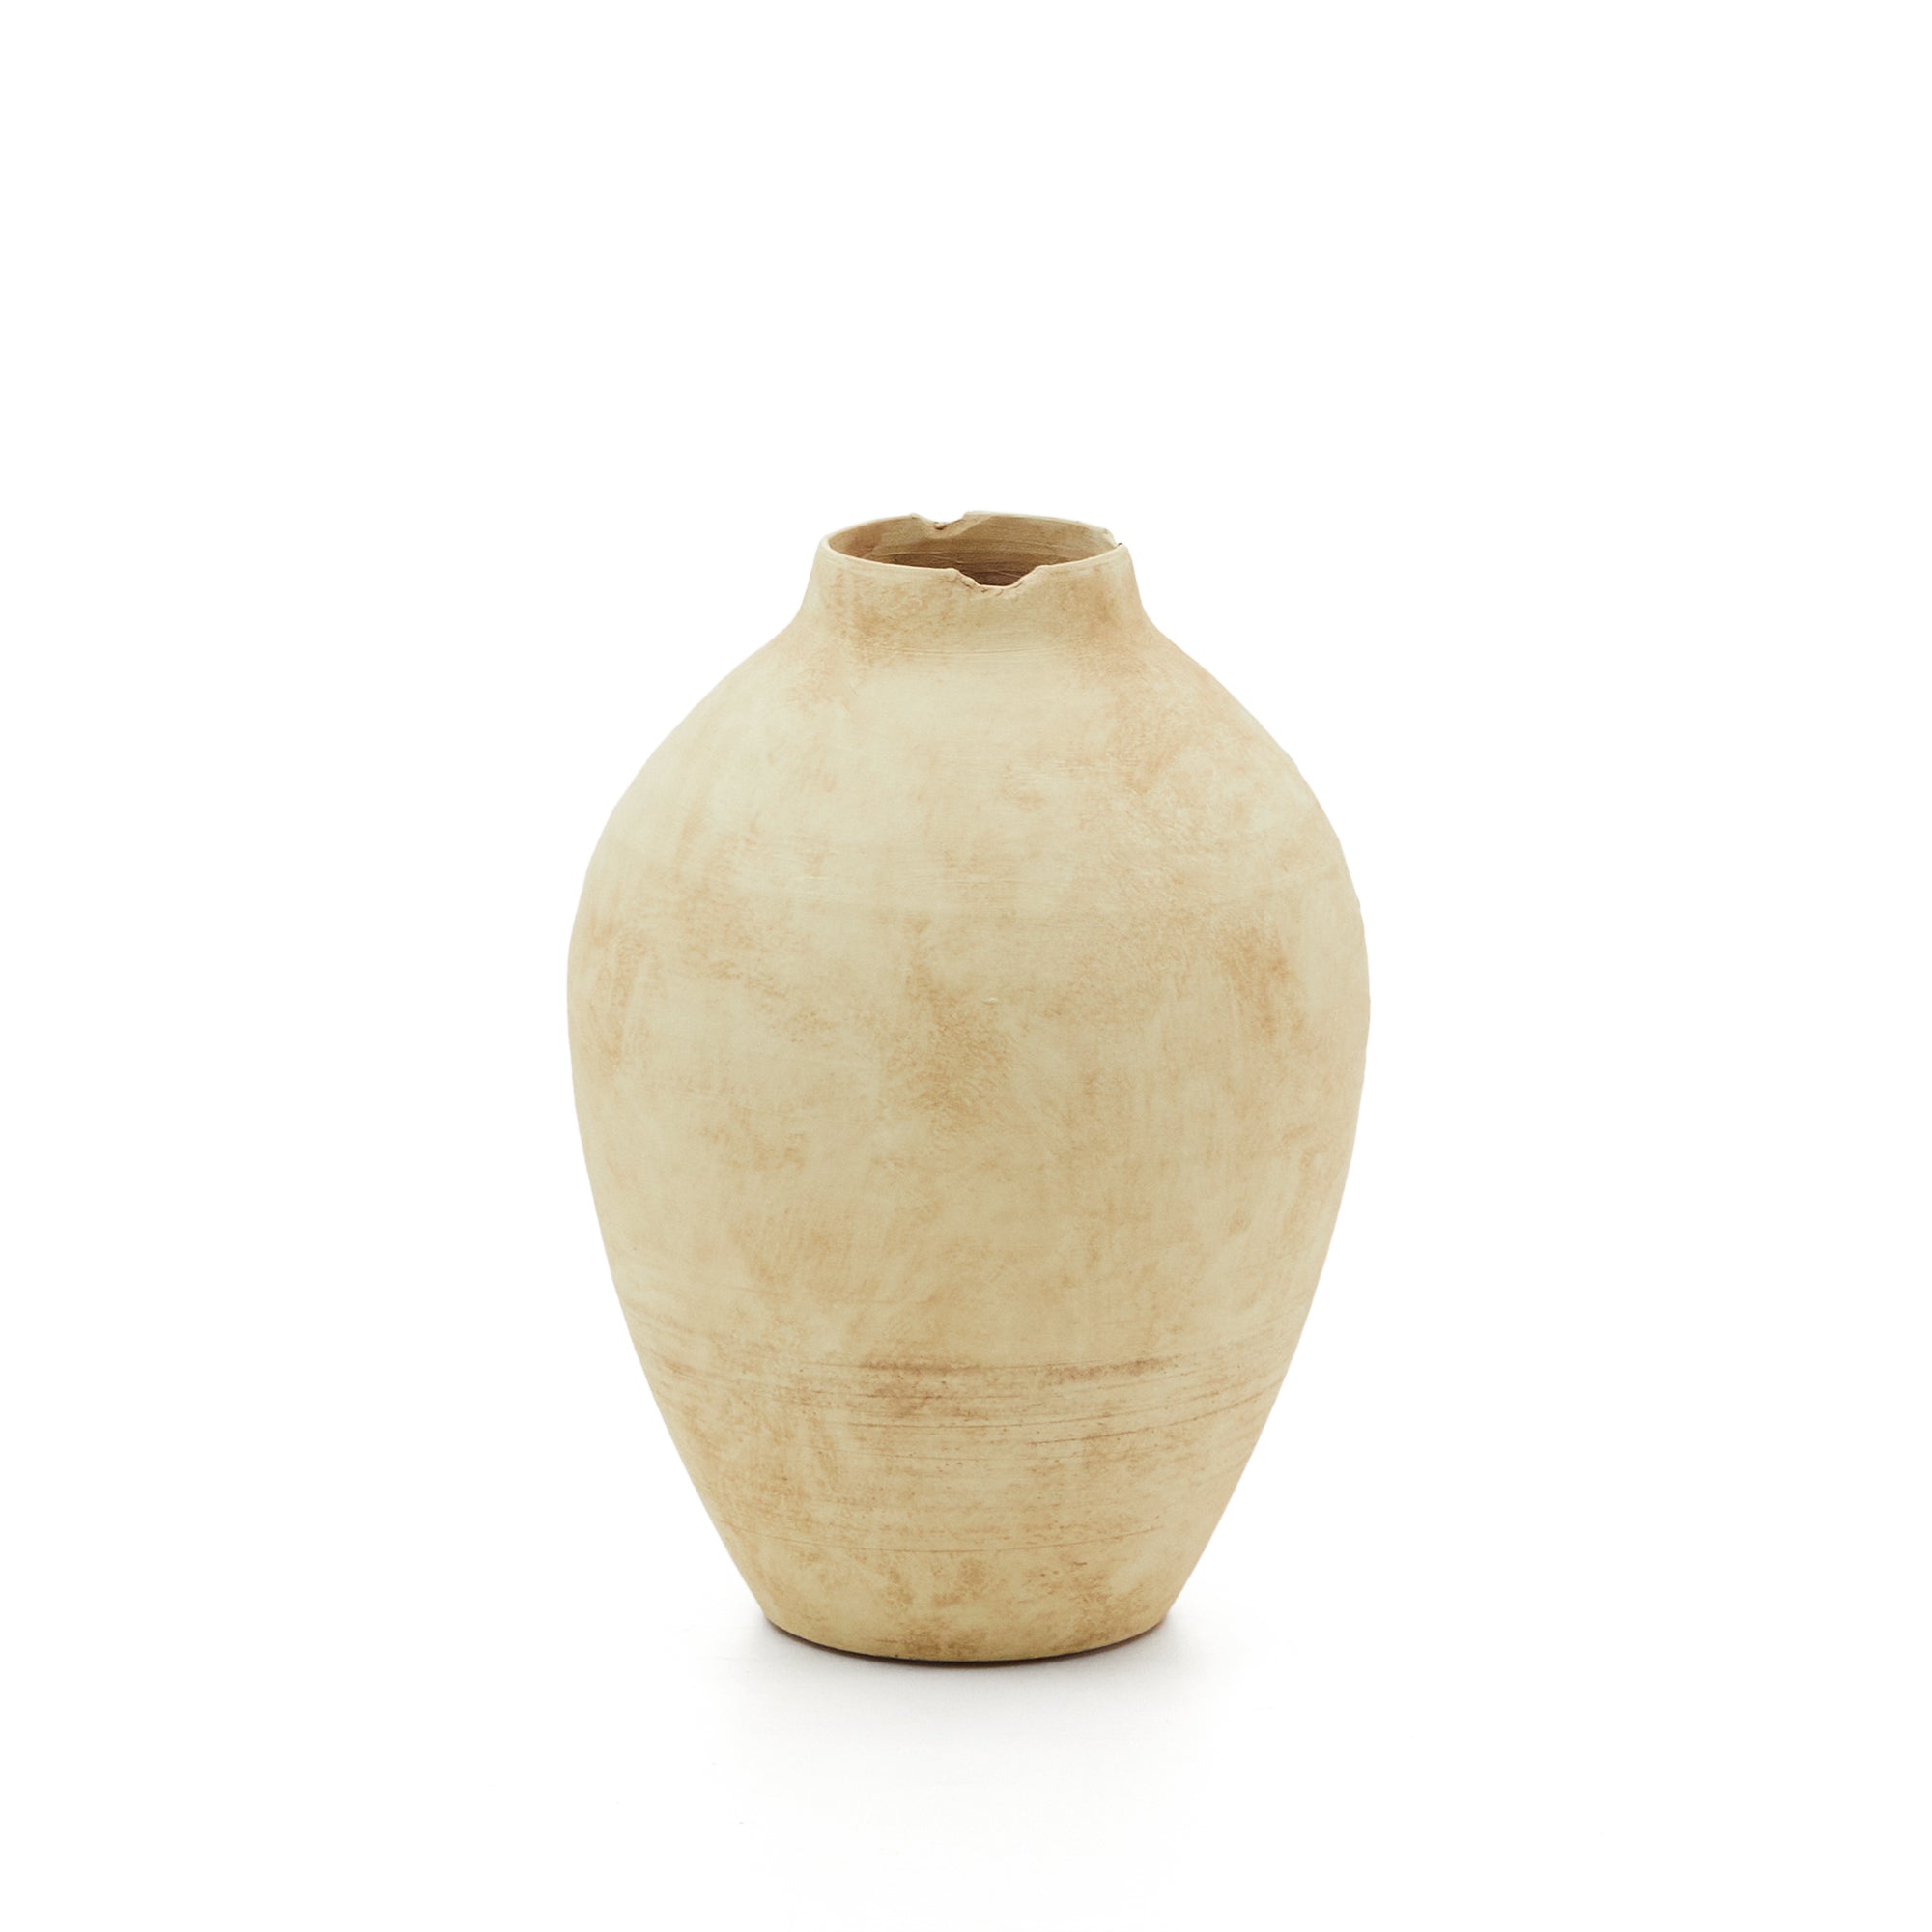 Silbet beige ceramic vase, 23 cm